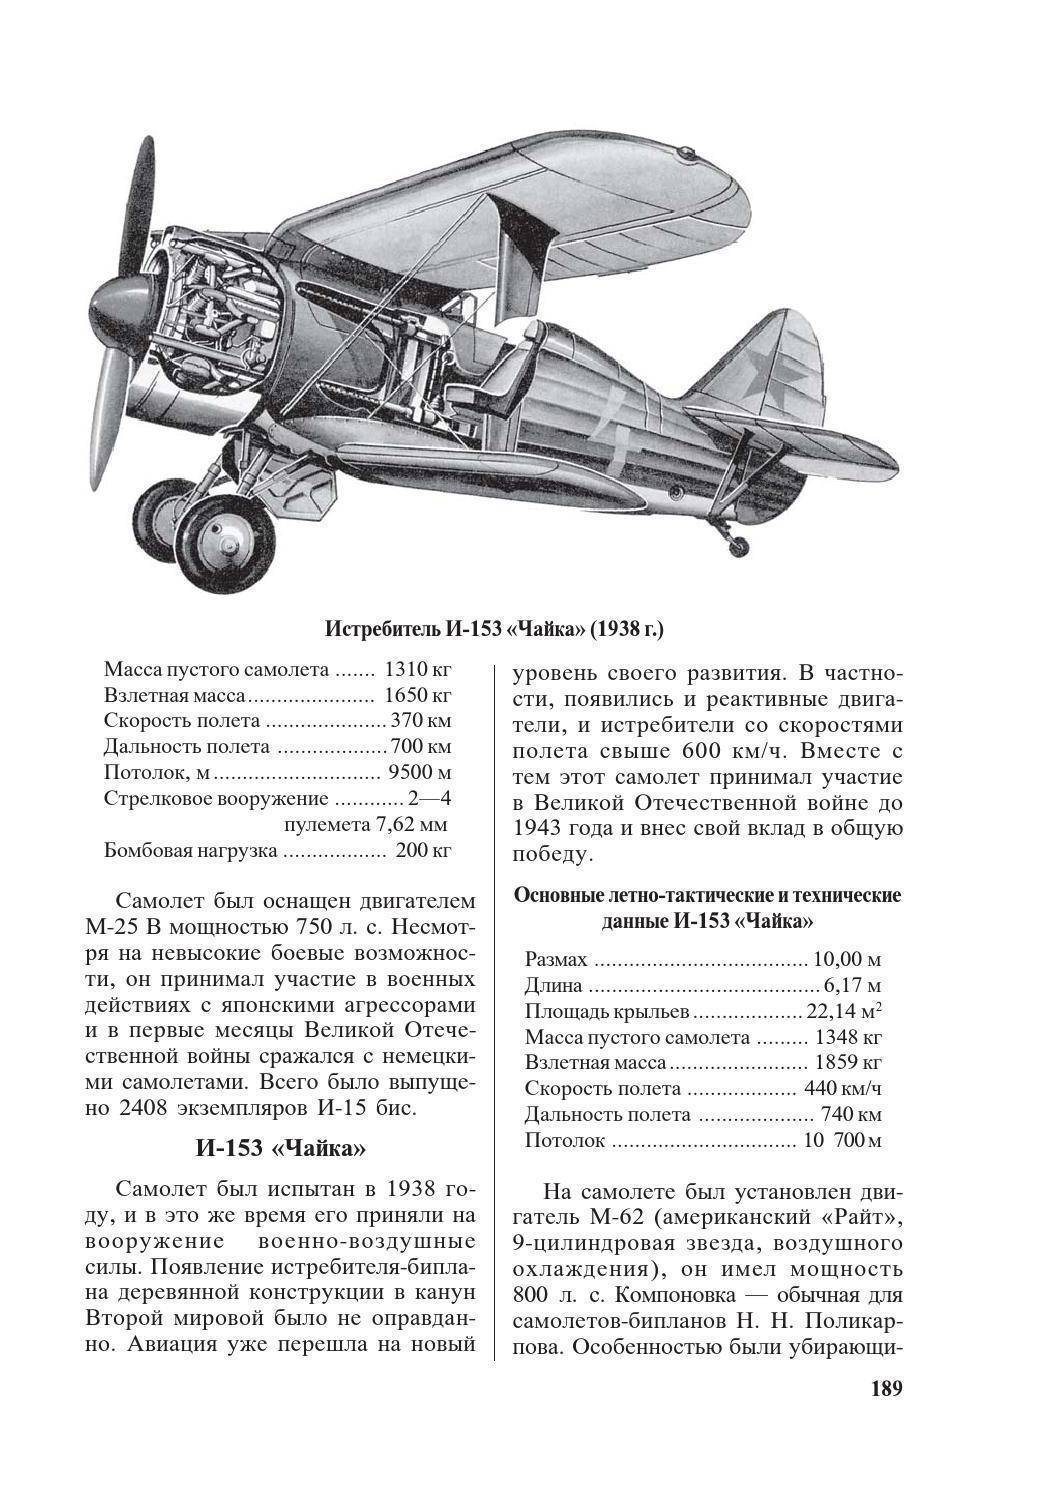 Истребитель и-153 «чайка» - последний советский серийный биплан | красные соколы нашей родины